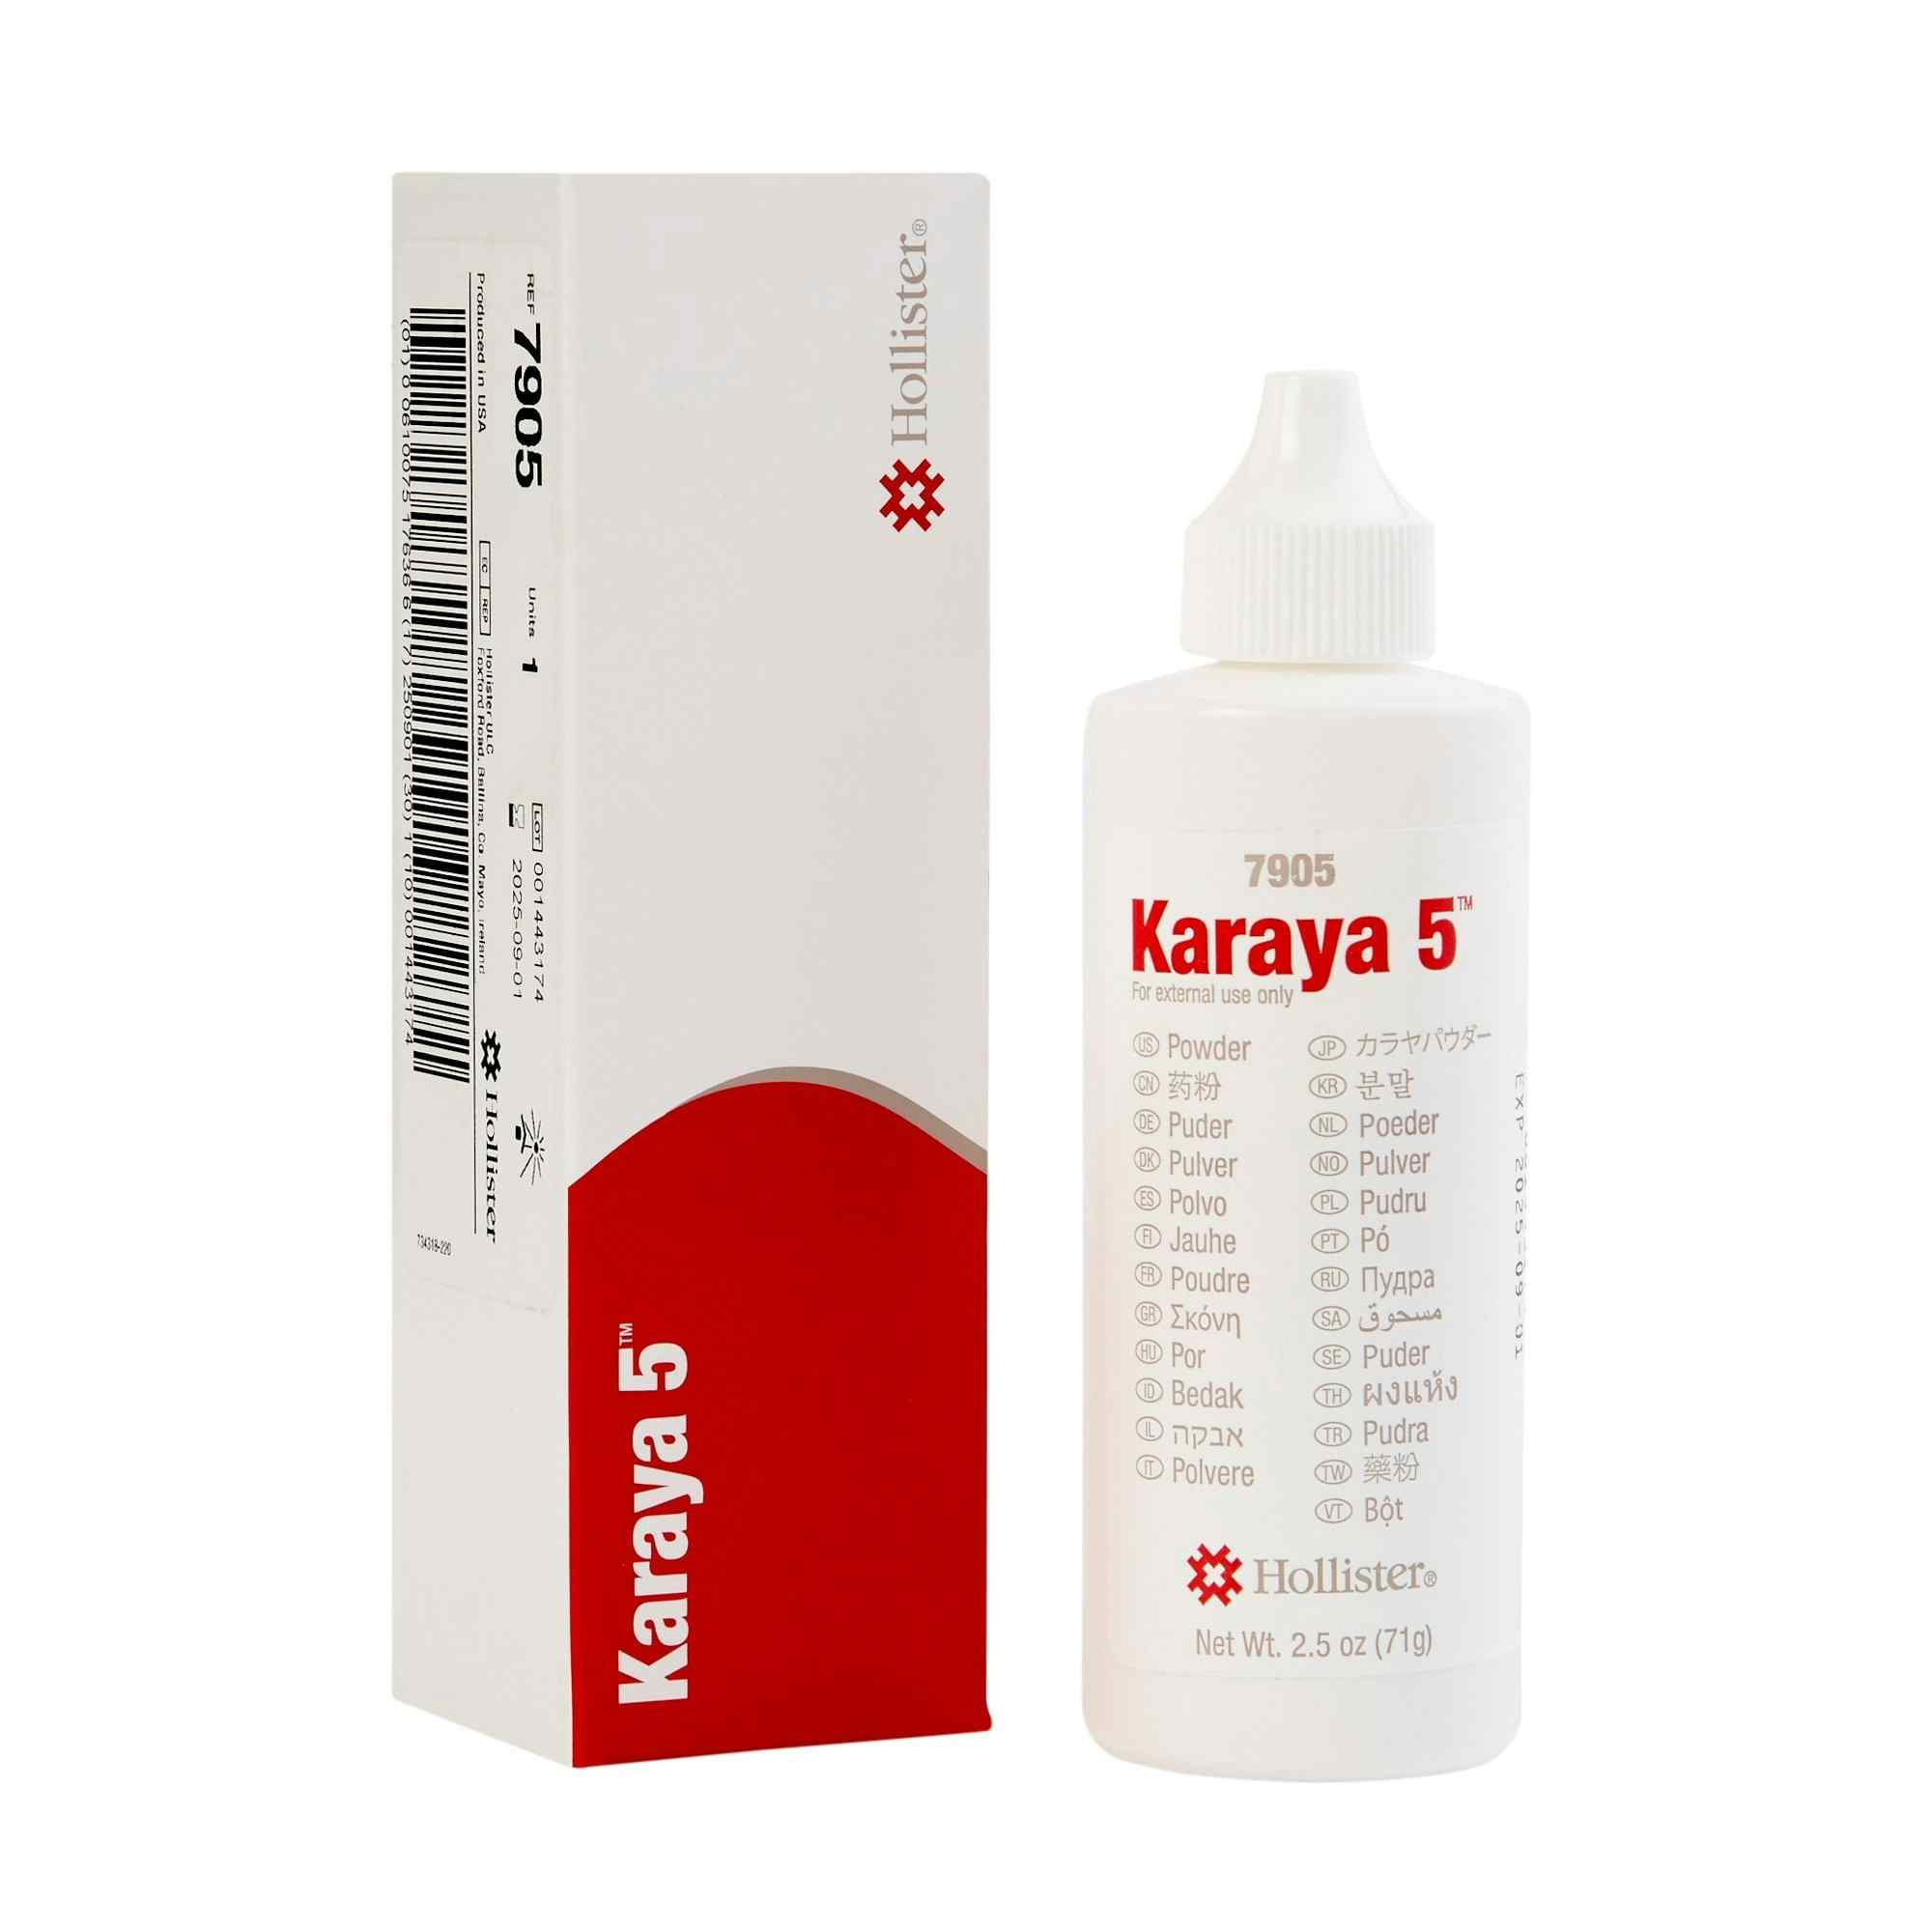 Karaya 5 Ostomy Barrier Powder, 2.5 oz, 7905, 1 Each